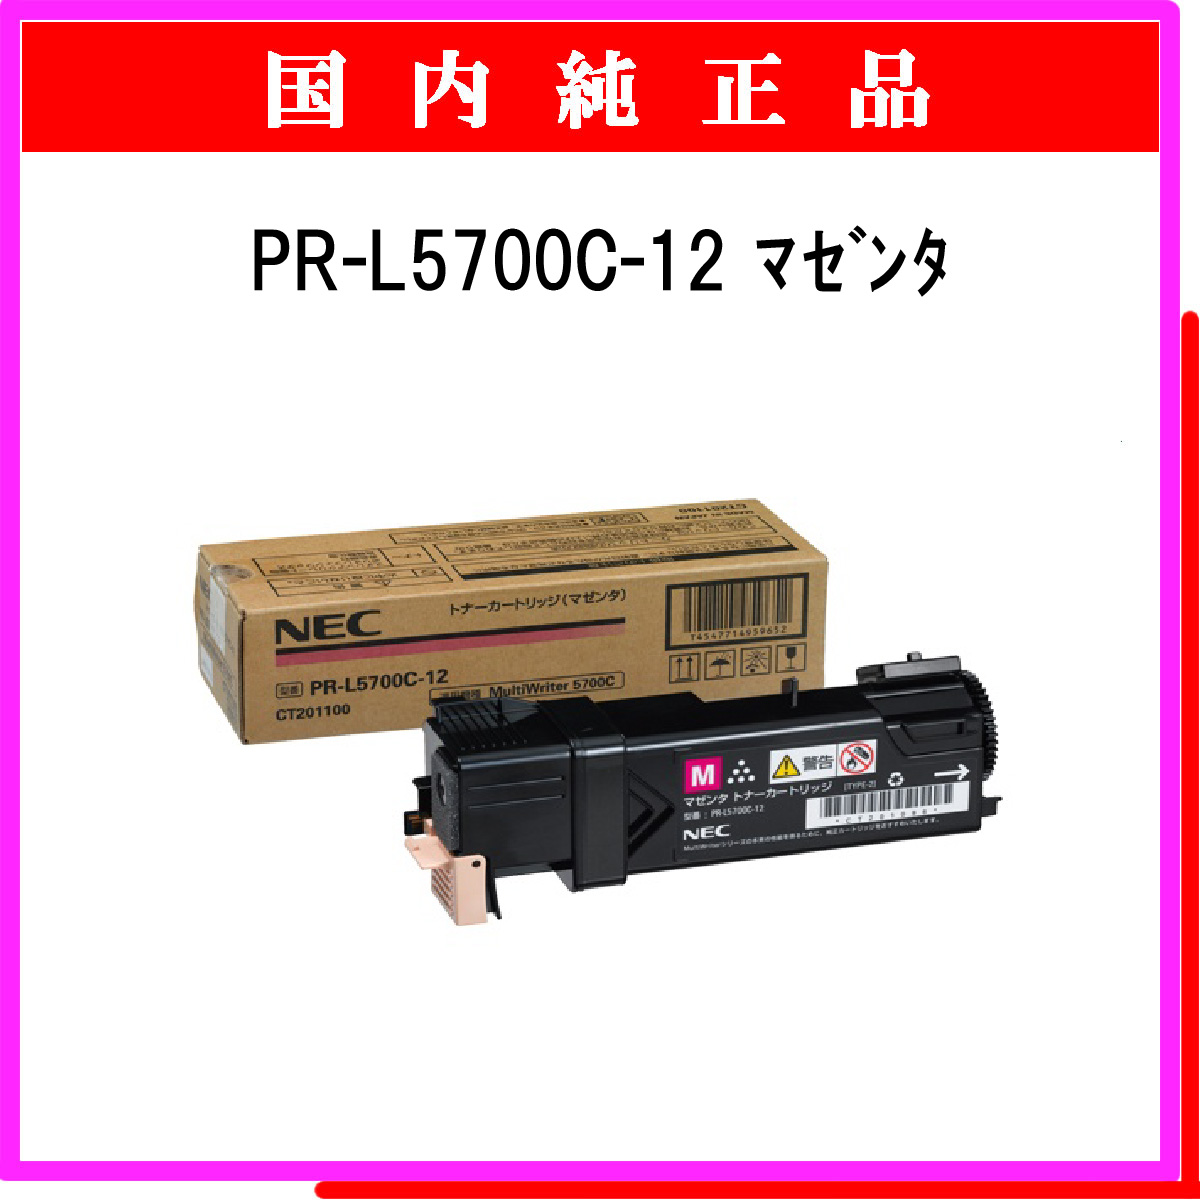 PR-L5700C-12 純正